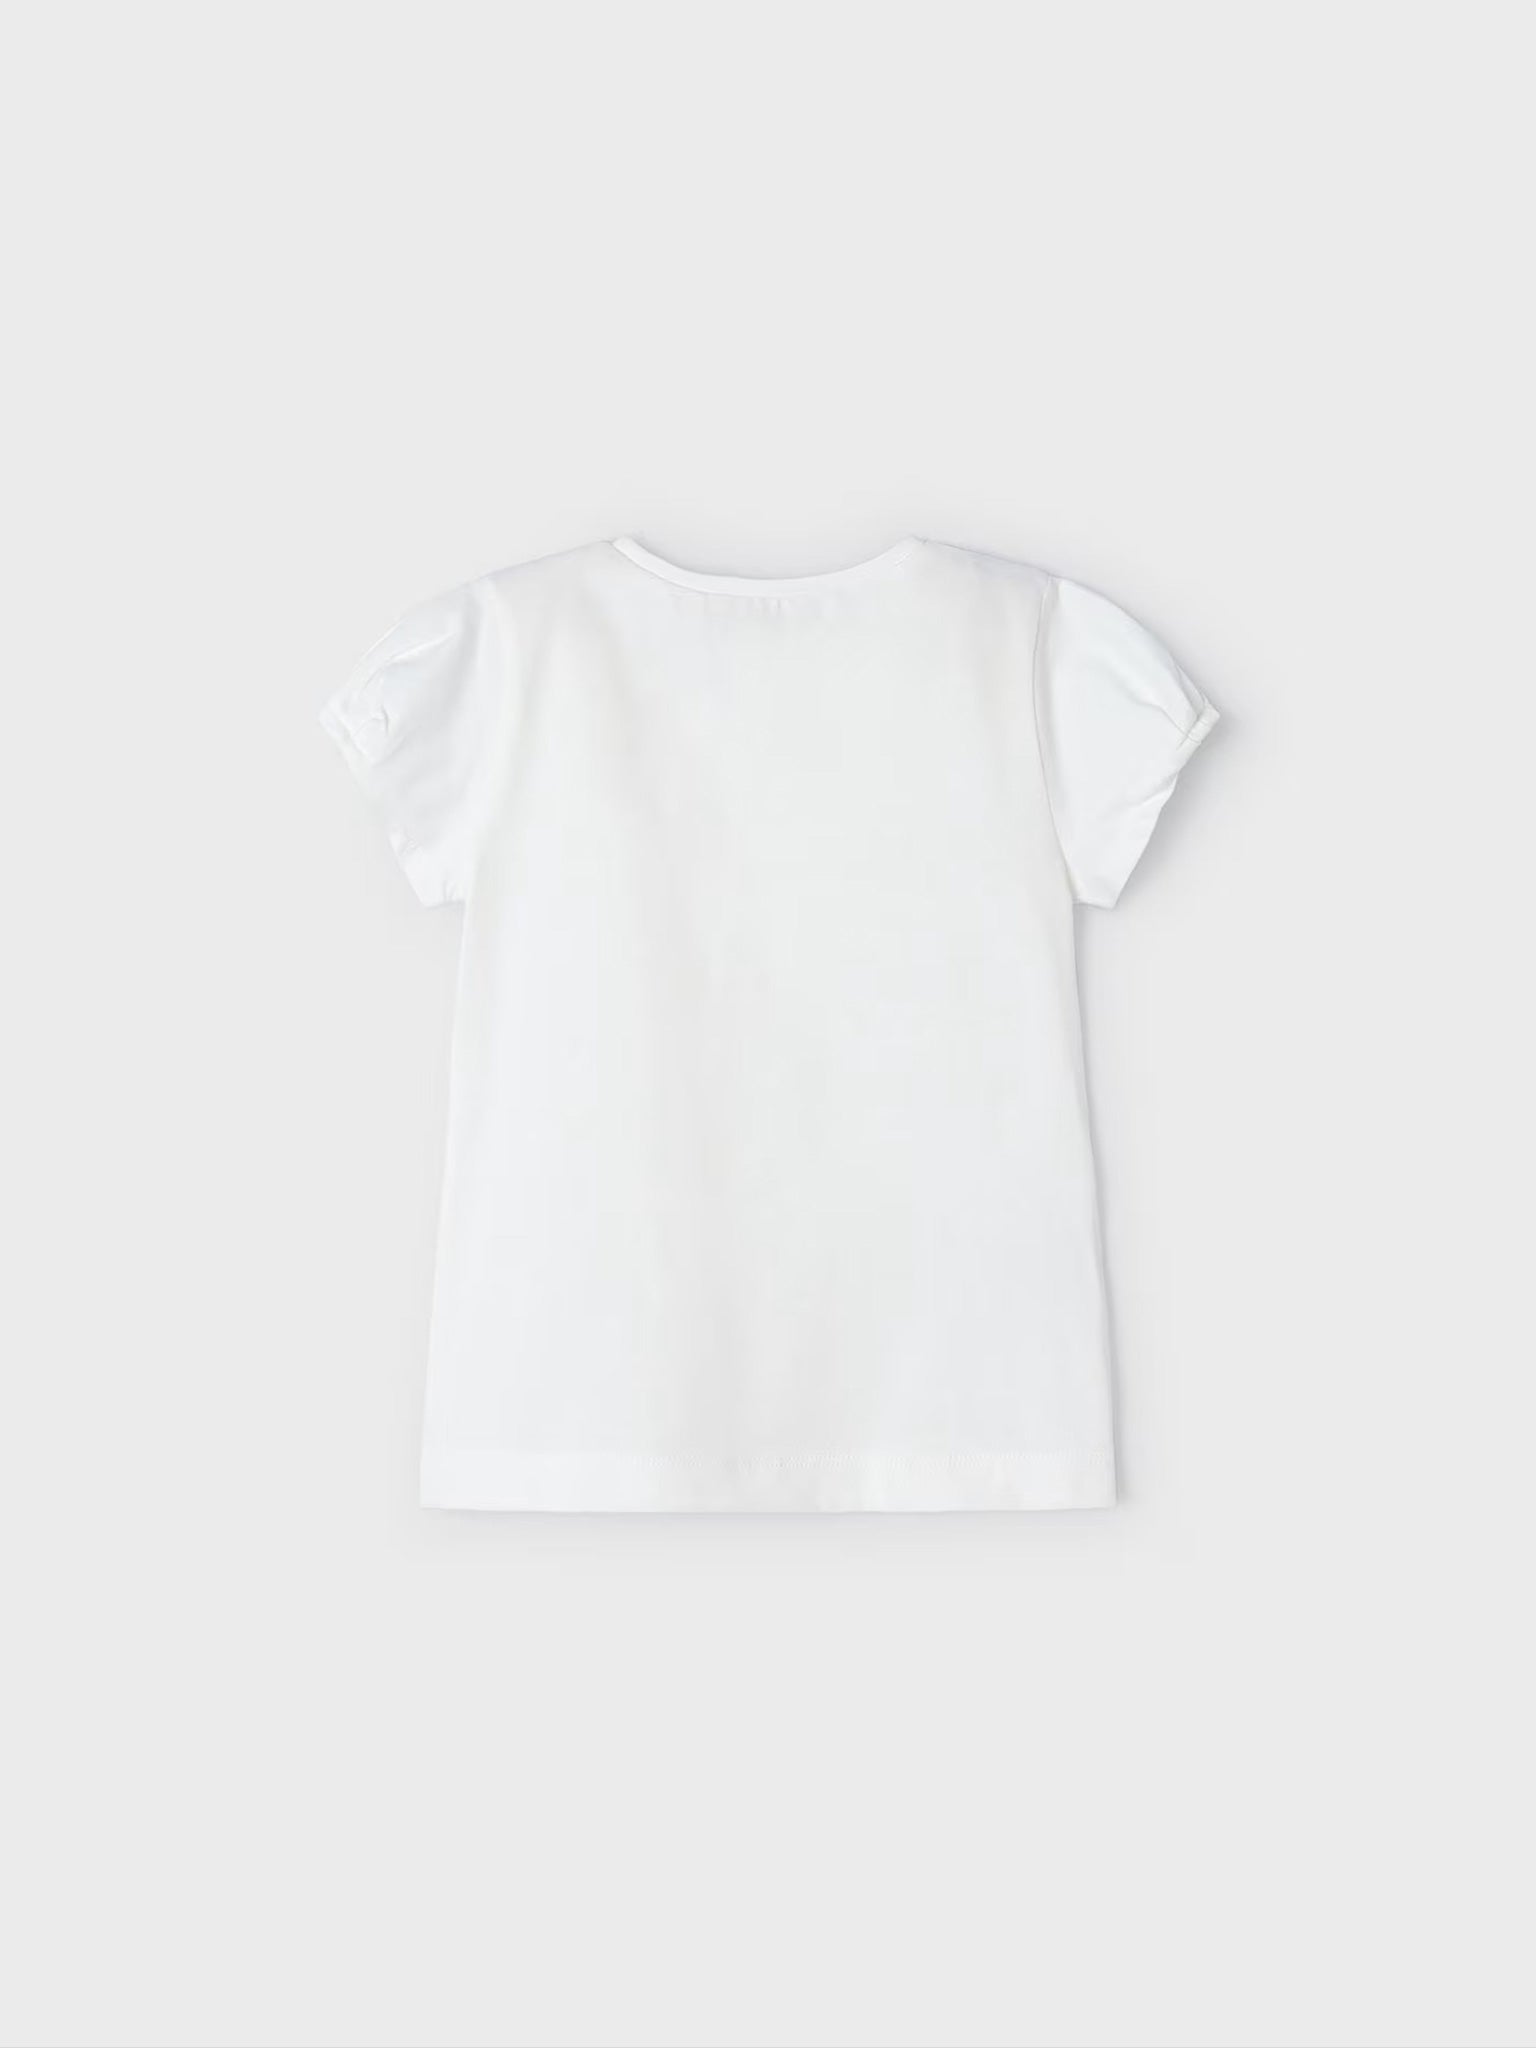 Παιδική μπλούζα μακό σταμπωτή Better Cotton 24-03080-020 | 24-03080-020